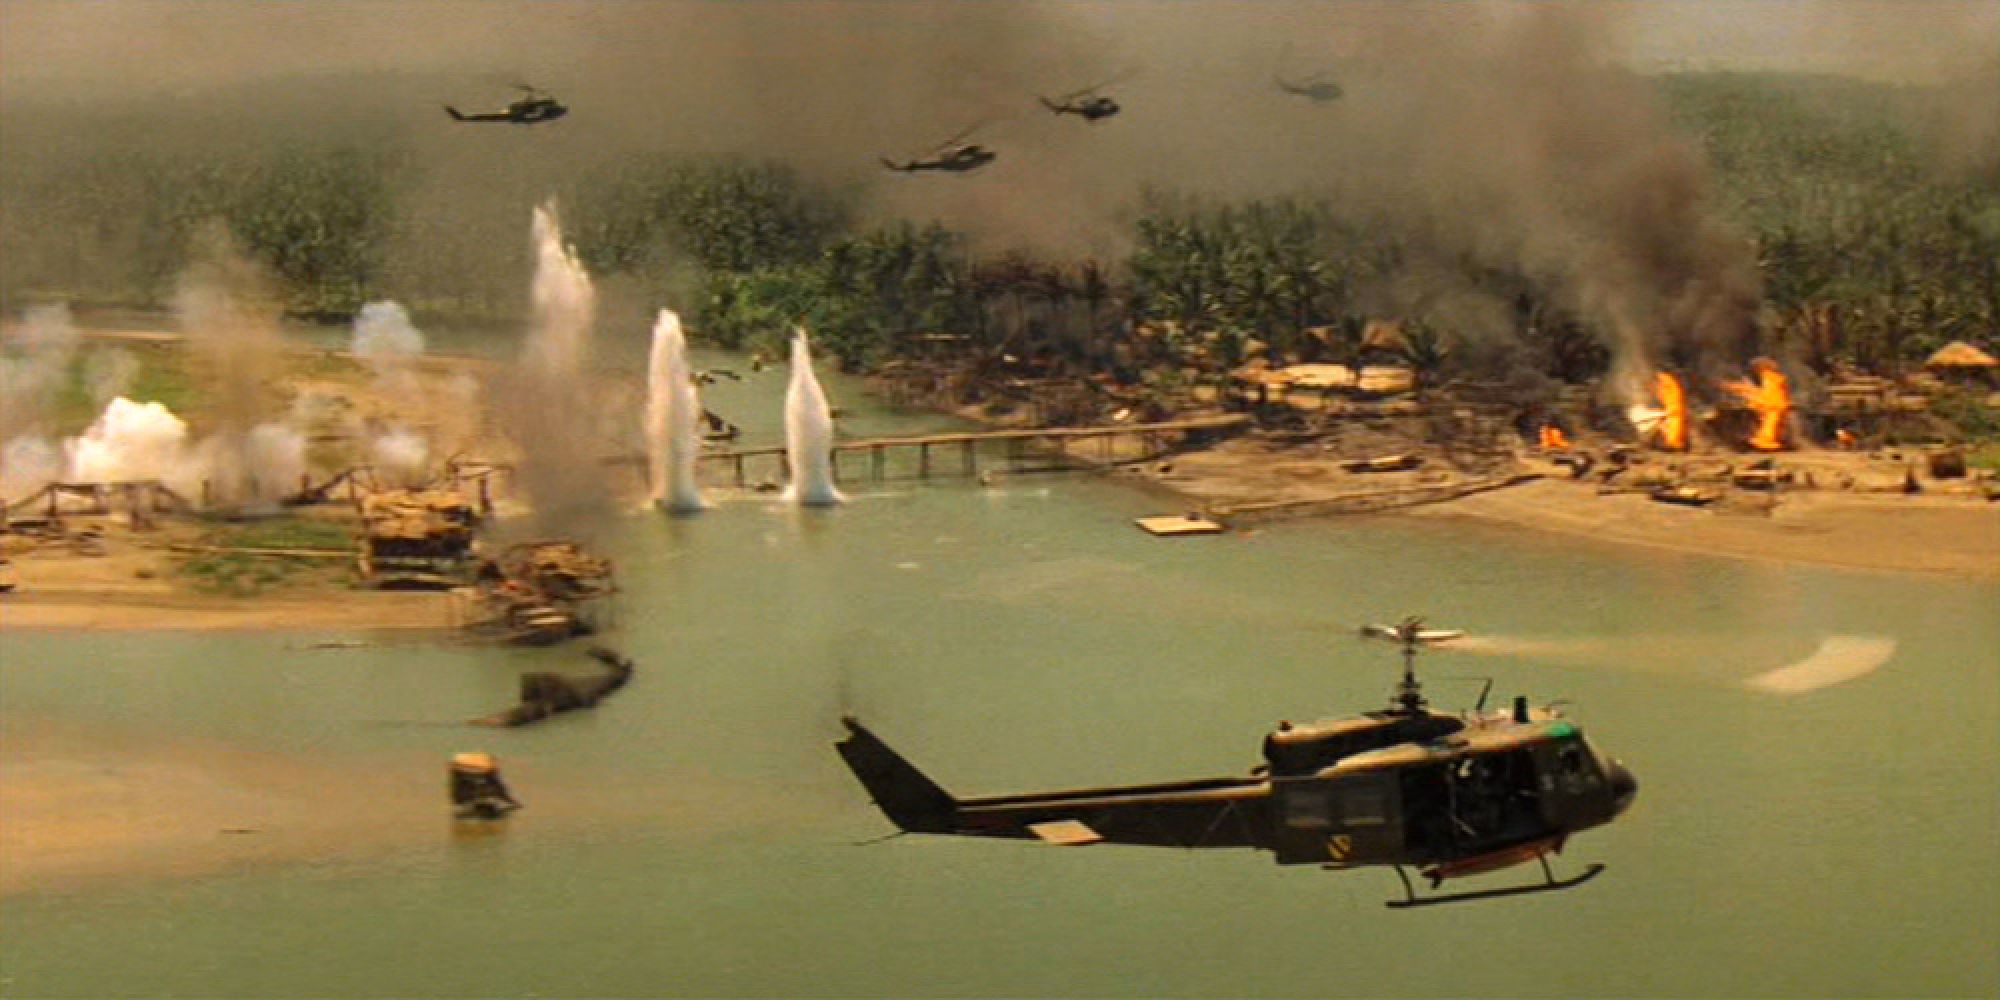 Apocalypse Now helicopter scene